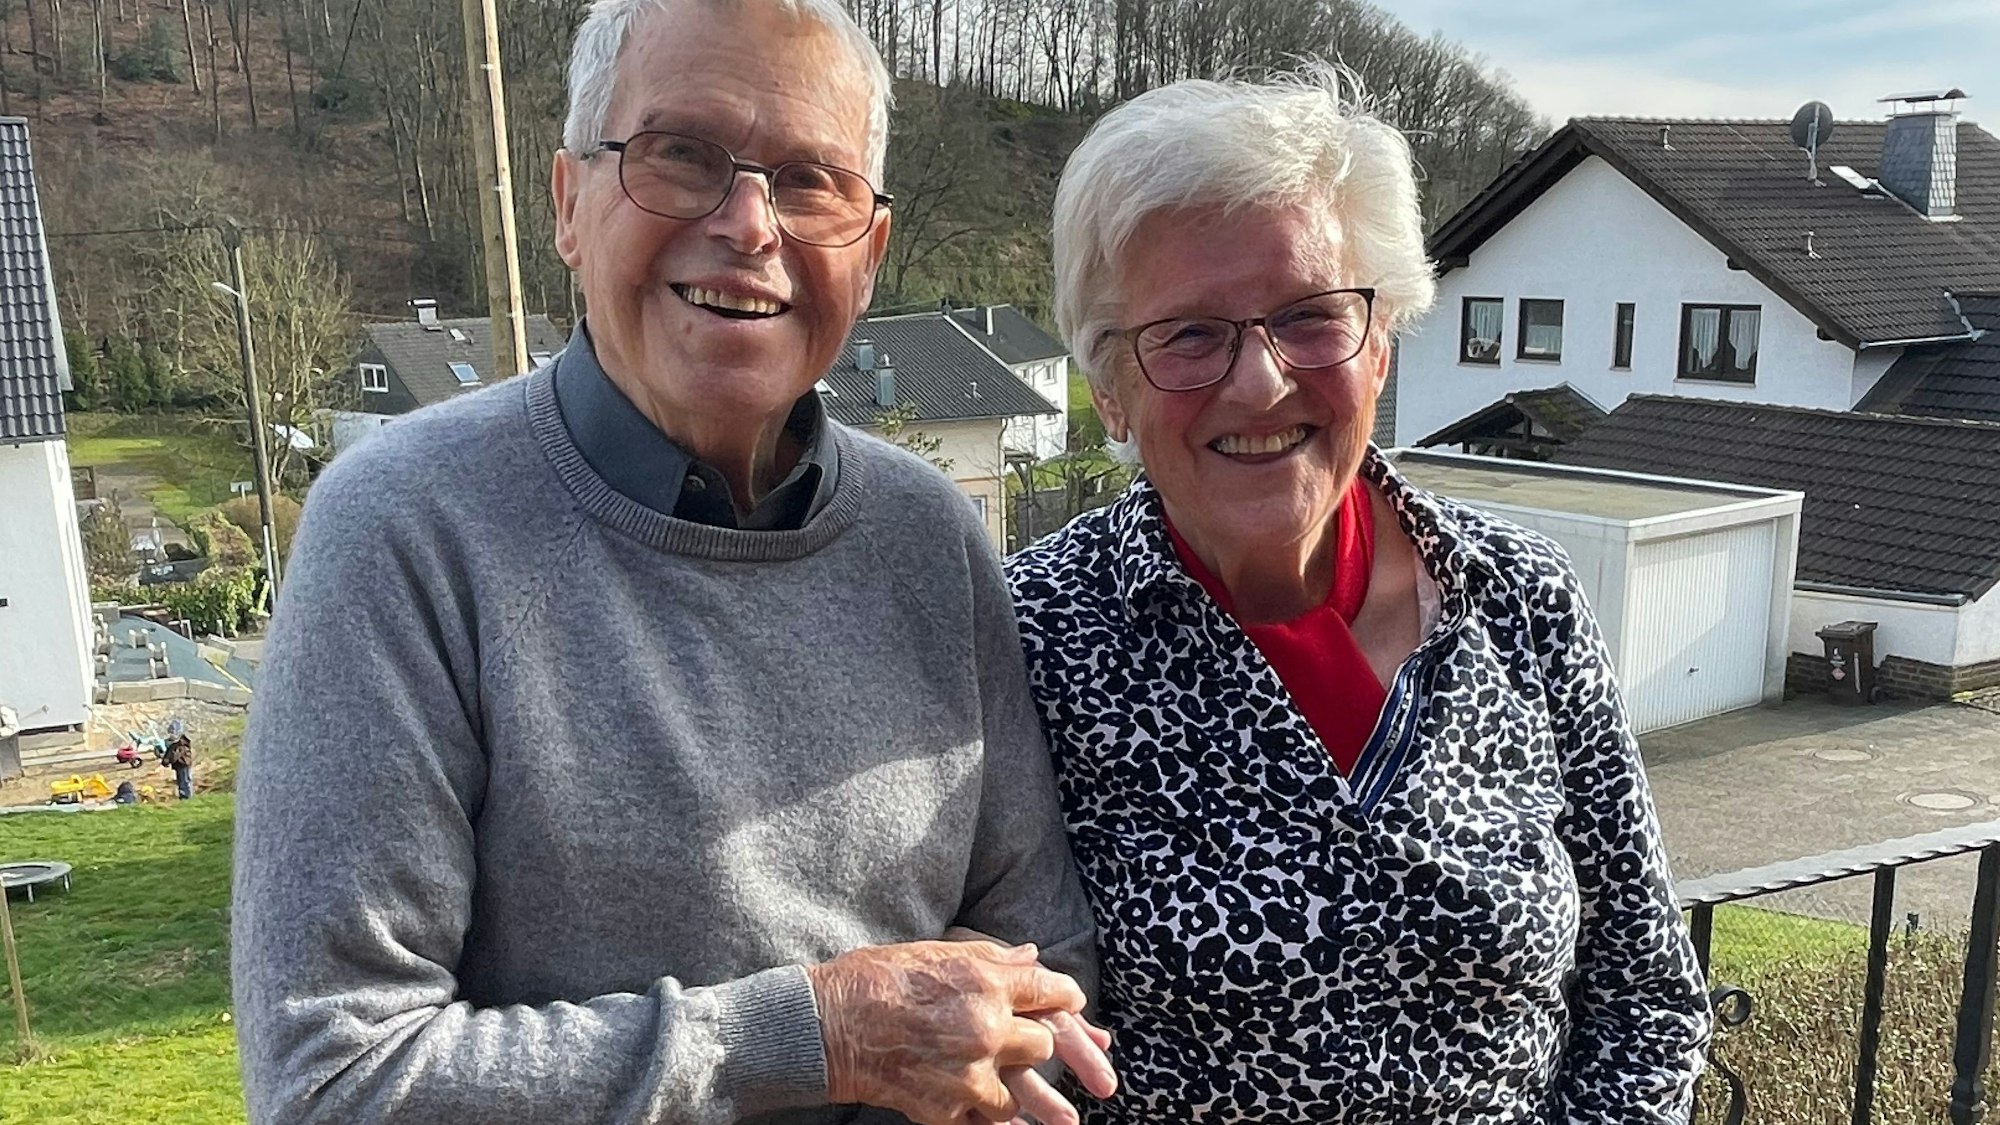 Seit 65 Jahren gehen Christel und Werner Stölting aus Engelskirchen-Schnellenbach gemeinsam durchs Leben. Am heutigen Sonntag feiern sie ihren besonderen Hochzeitstag. Unser Foto zeigt das Jubelpaar an seinem Haus.